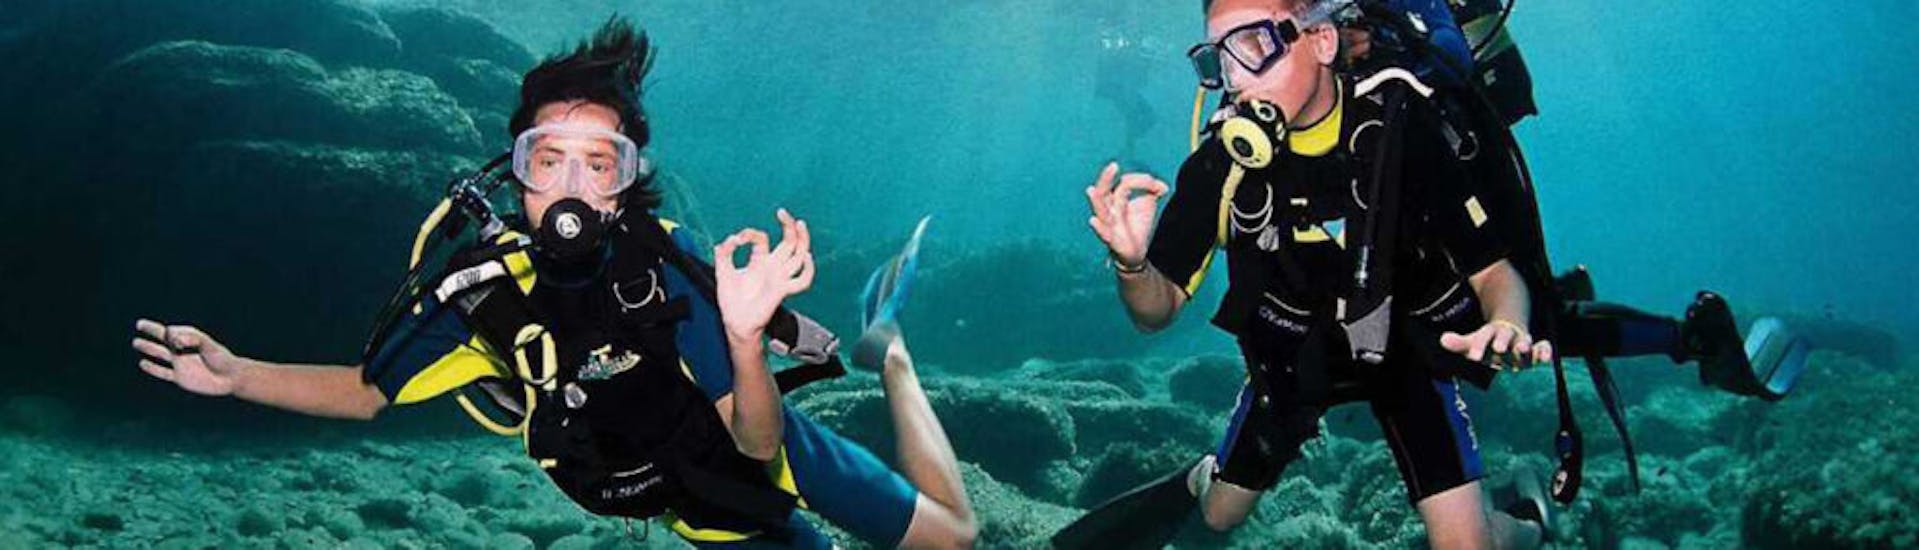 Foto van twee duikers die gebarentaal doen onder water tijdens PADI Scuba duikcursus in Ibiza voor beginners door Arenal Diving & Boat Trips Ibiza.